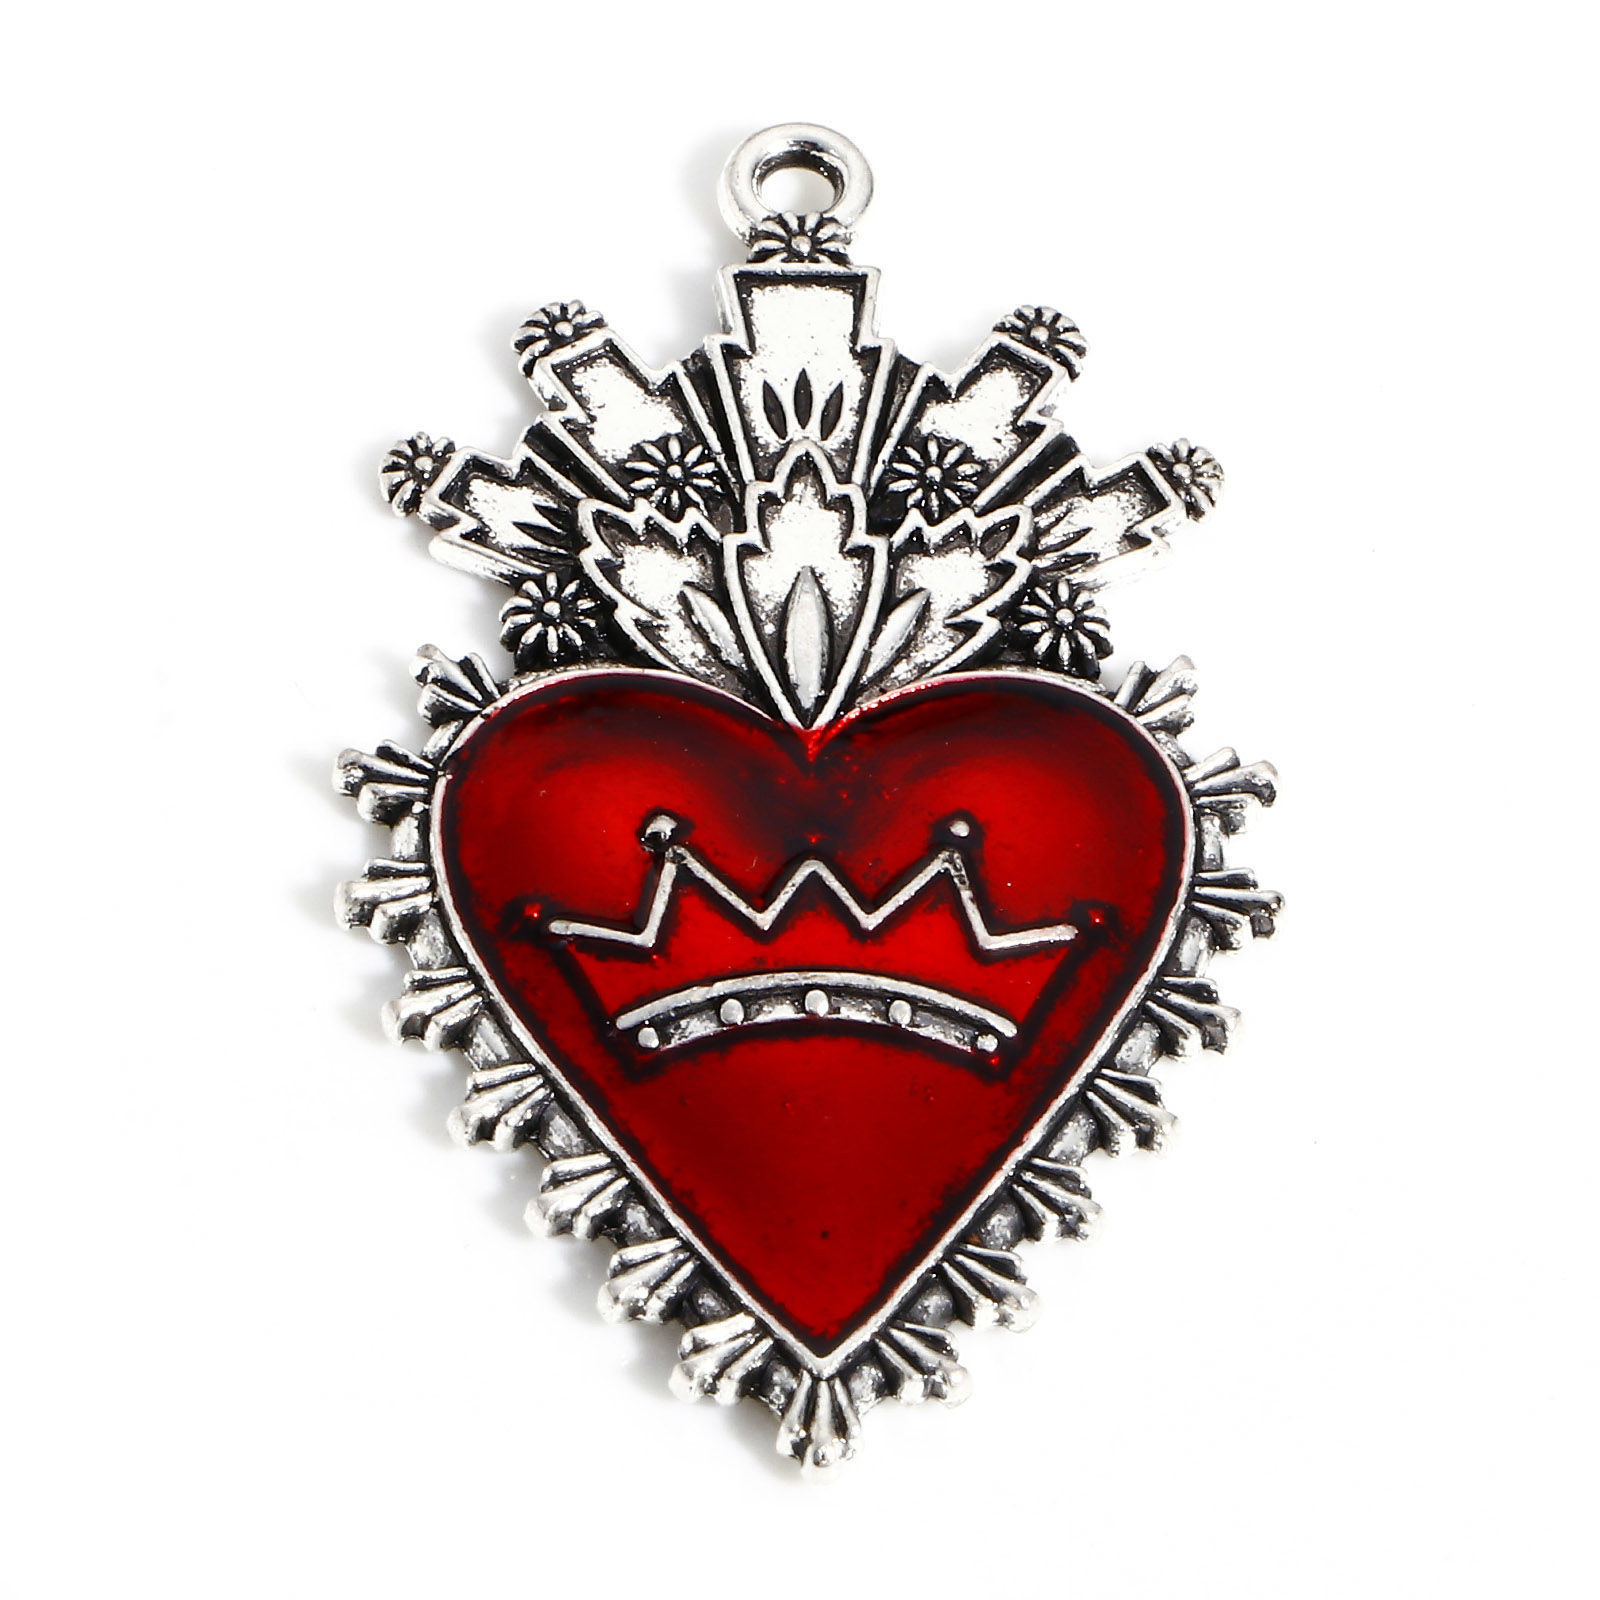 Picture of Zinc Based Alloy Religious Pendants Antique Silver Color Red Ex Voto Heart Crown Enamel 4.6cm x 2.7cm, 5 PCs